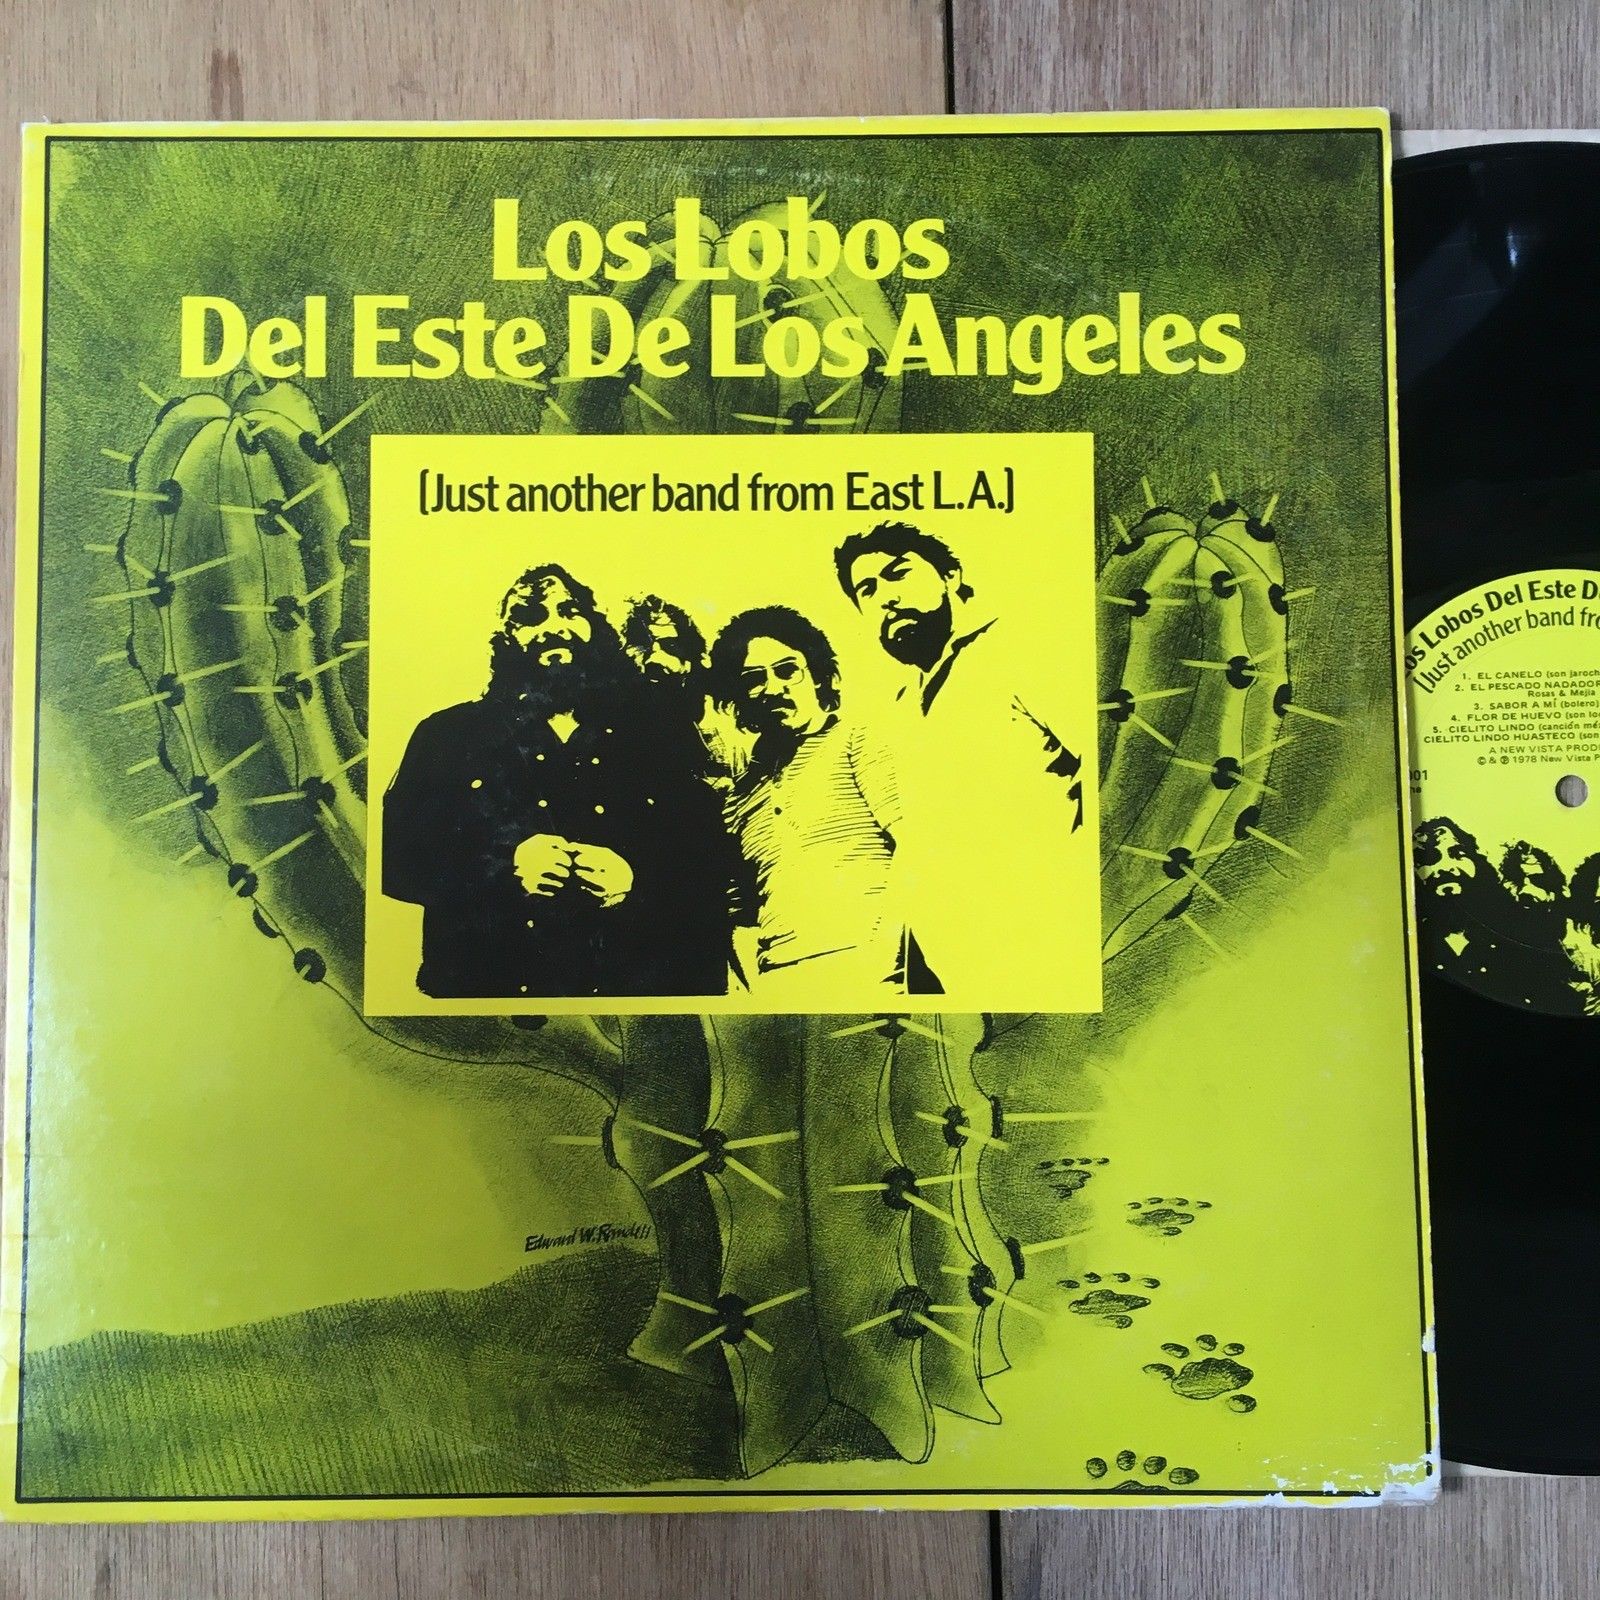  - Los Lobos Del Este De Los Angeles - New Vista - NV 1001 -  ORIG RARE CHICANO LP - auction details